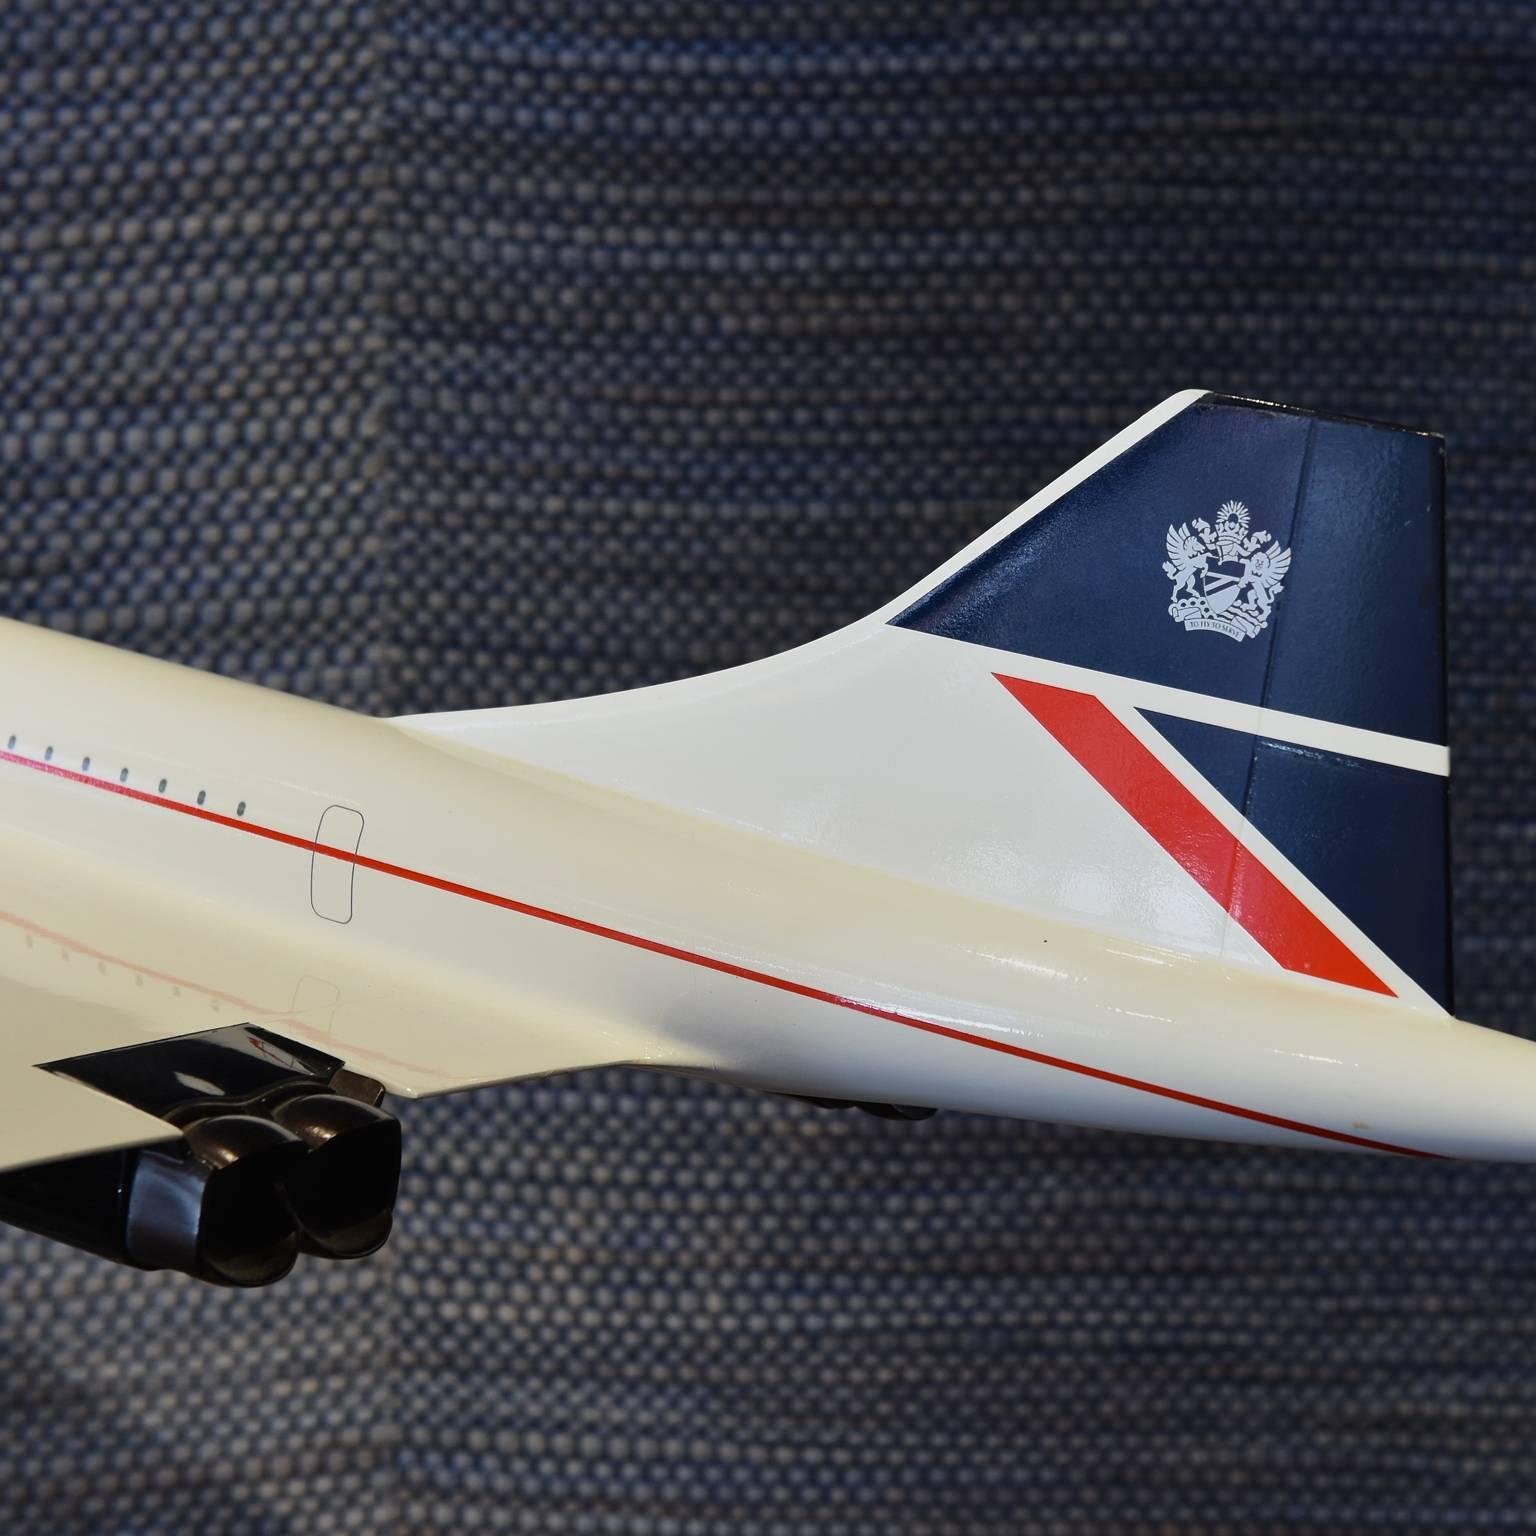 20th Century Original British Airways Concorde Model